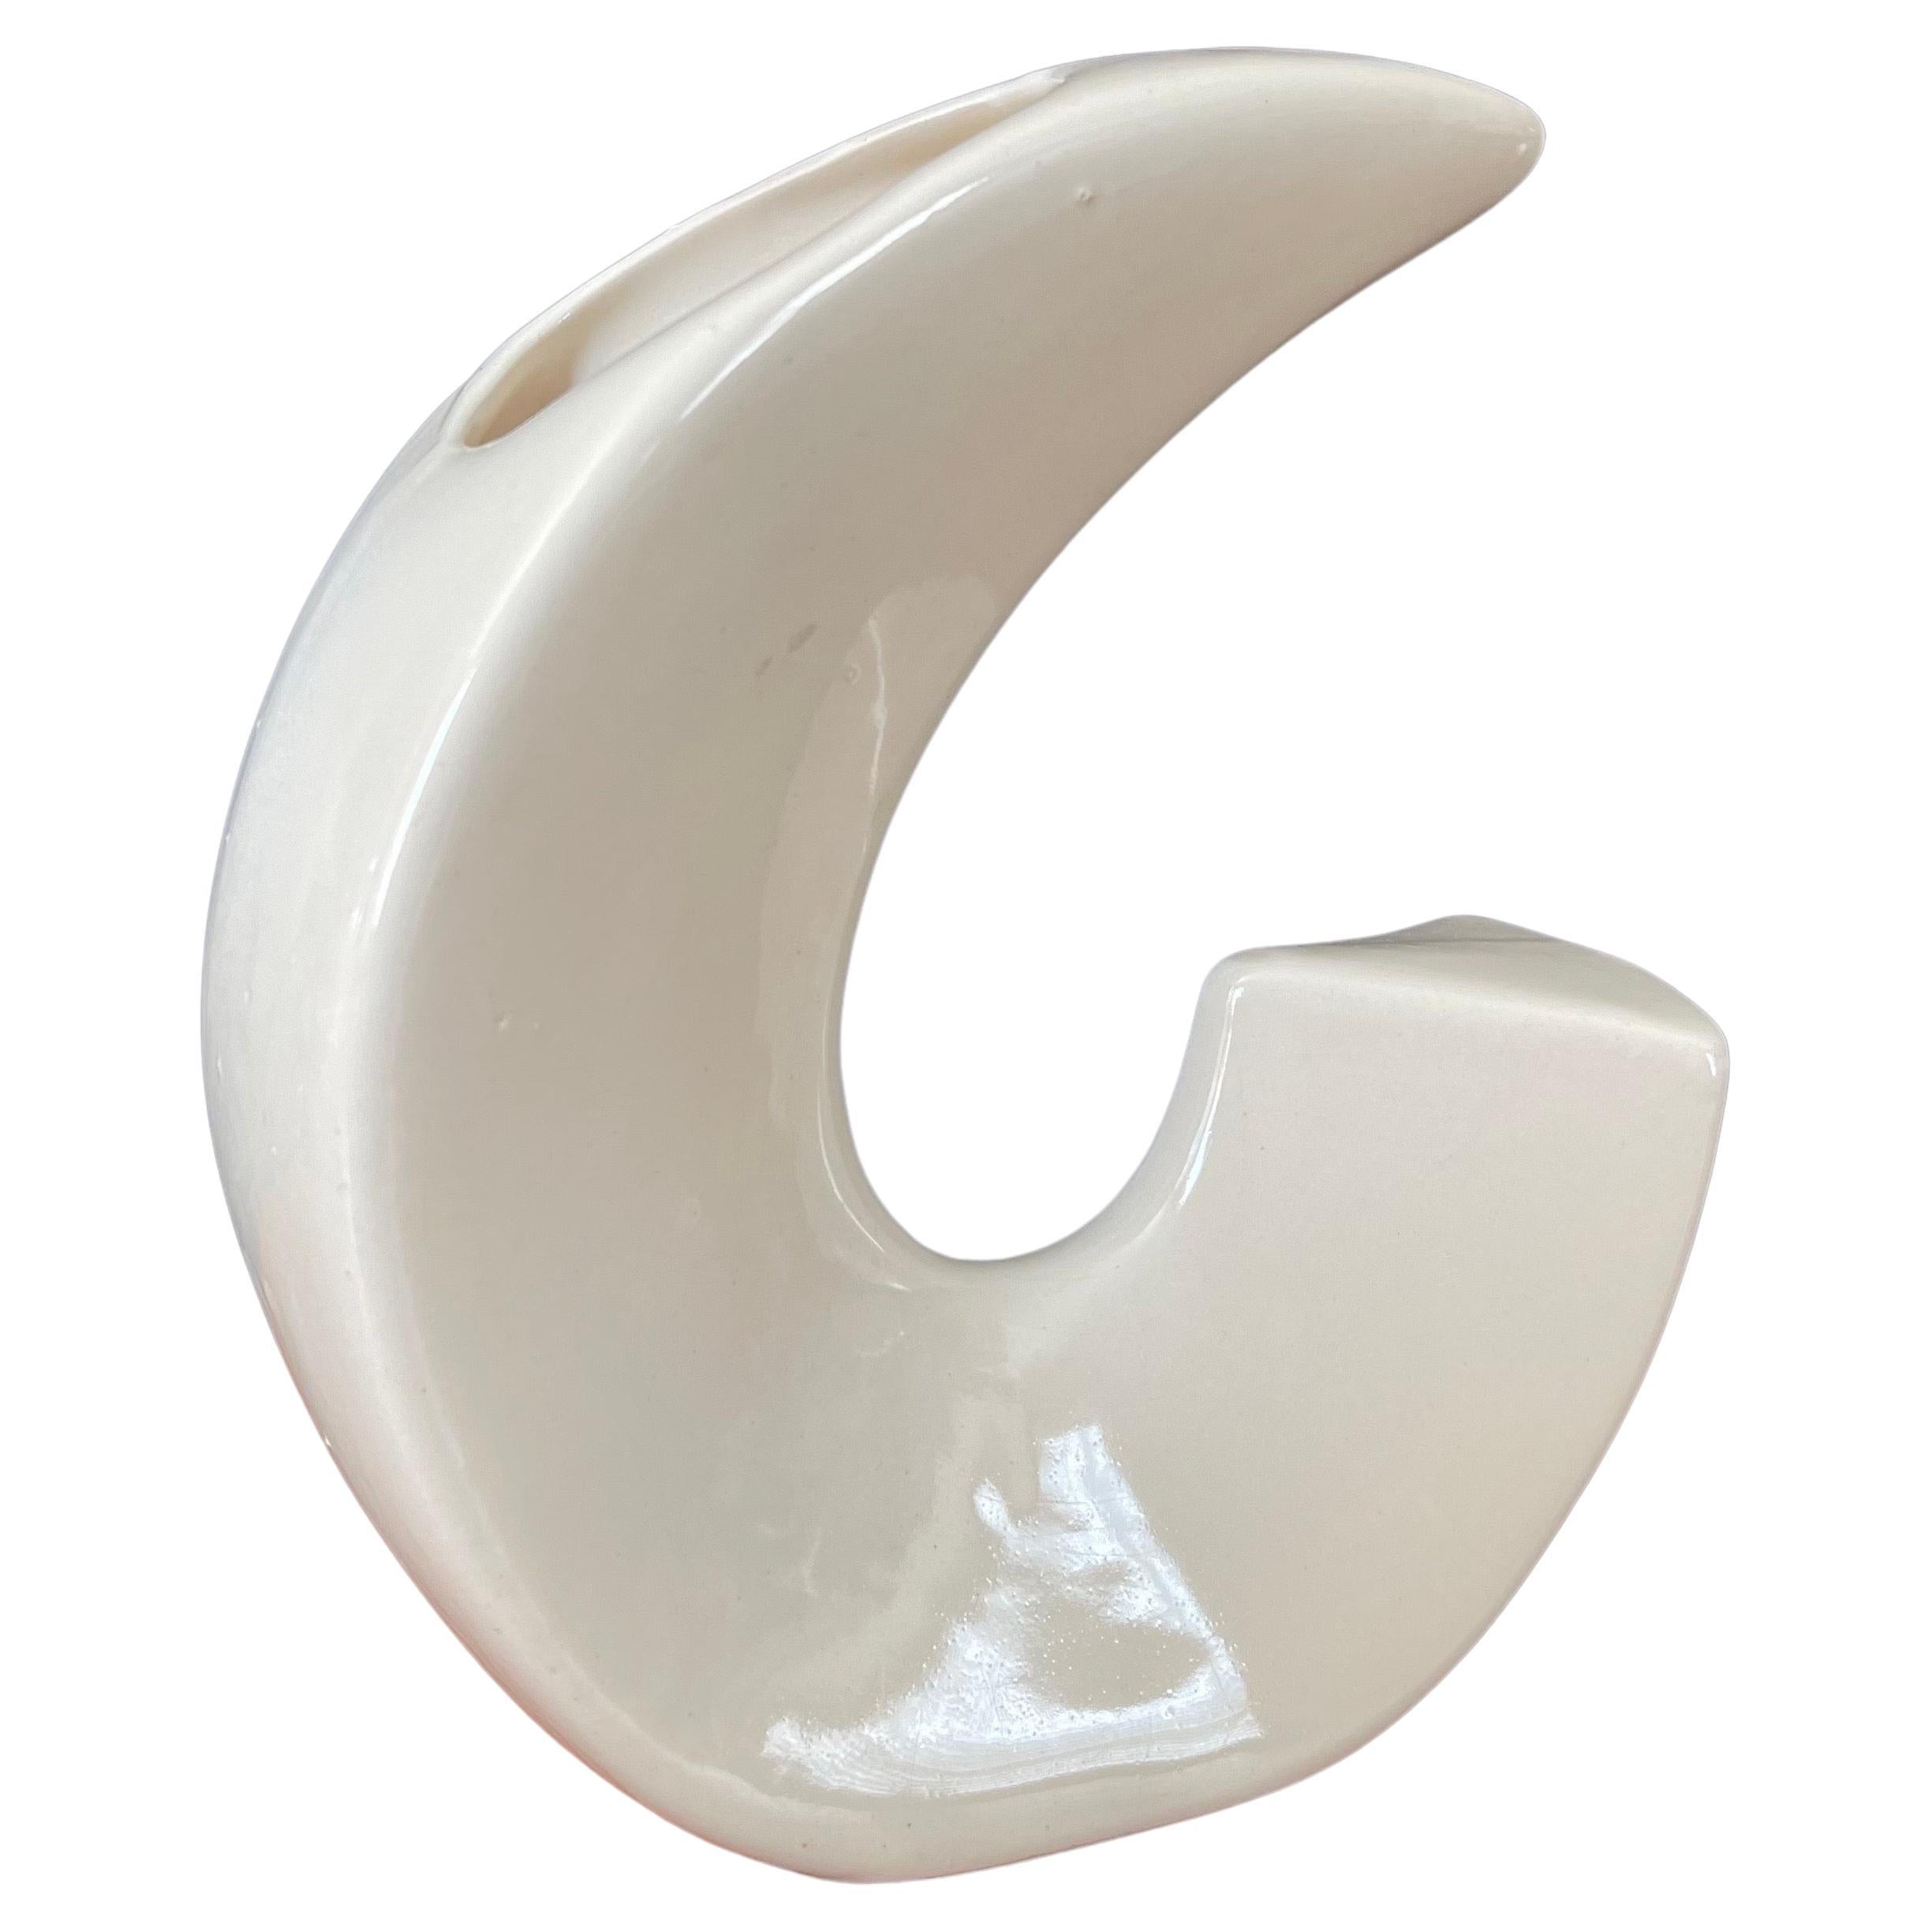 Eine sehr schöne MCM modernistische weiße Keramik Ikebana Vase, ca. 1960er Jahre. Die Vase ist aus Keramik, in sehr gutem Zustand ohne Chips oder Risse und misst 7 